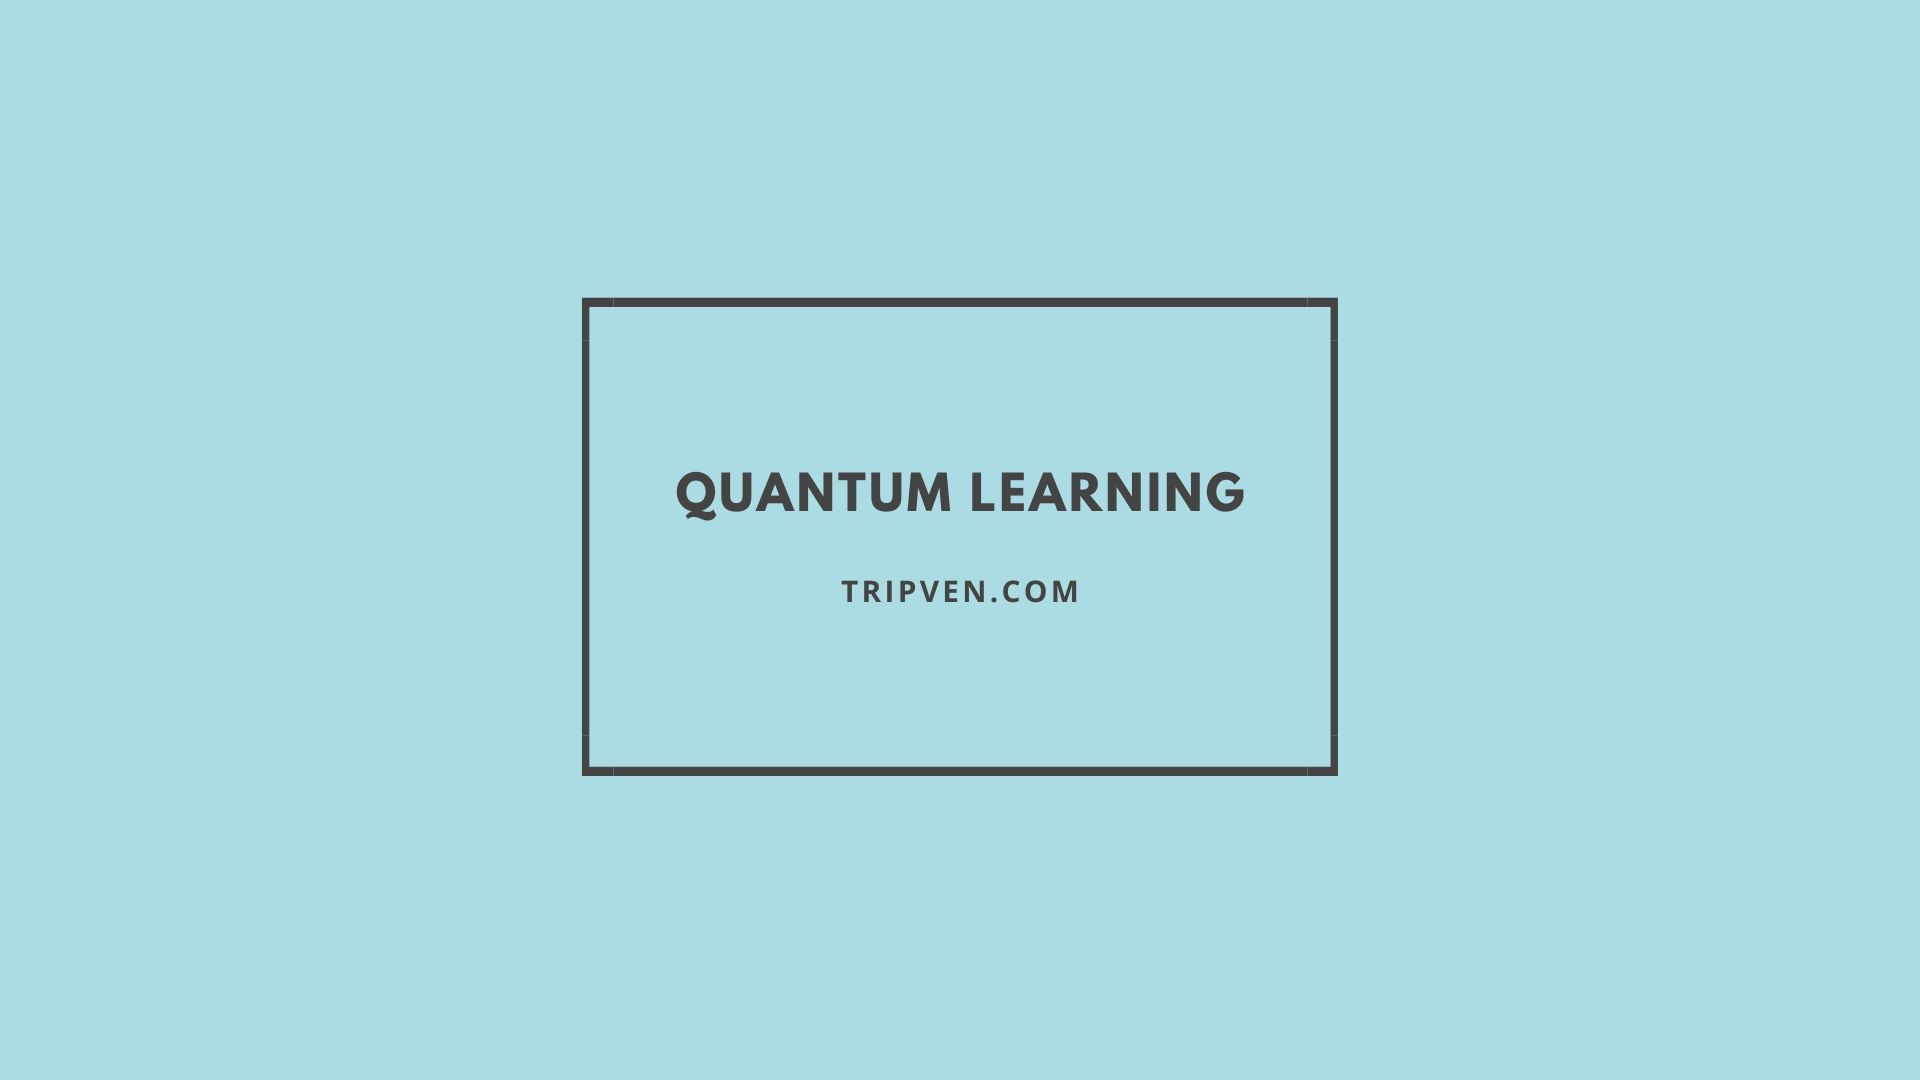 Pertanyaan Tentang Quantum Learning